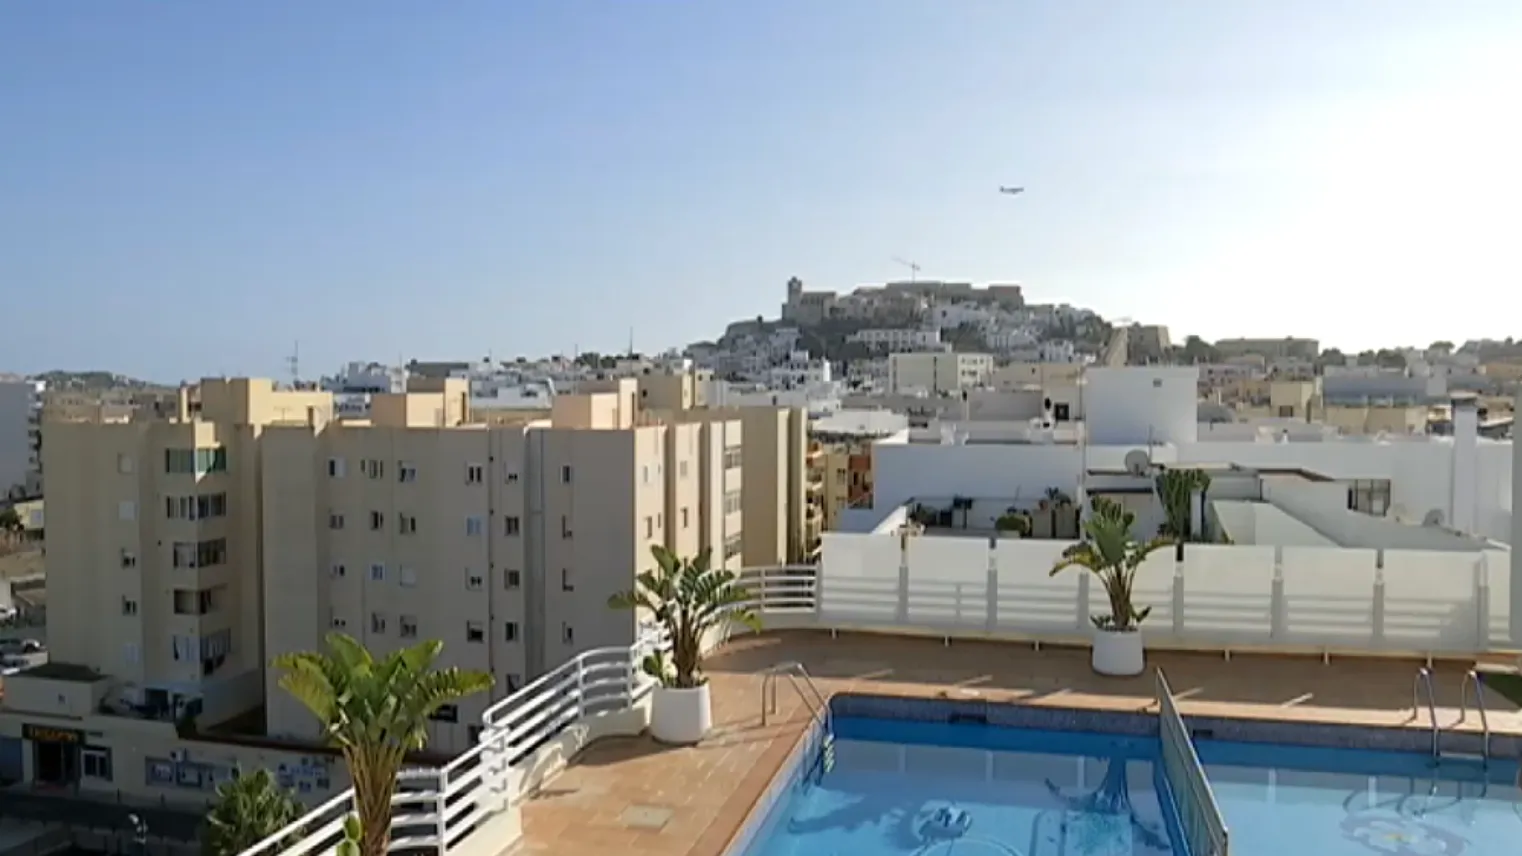 Hotelers i docents d’Eivissa veuen amb escepticisme l’ajut de 400 euros al mes perquè el personal sanitari i professors s’allotgin a hotels